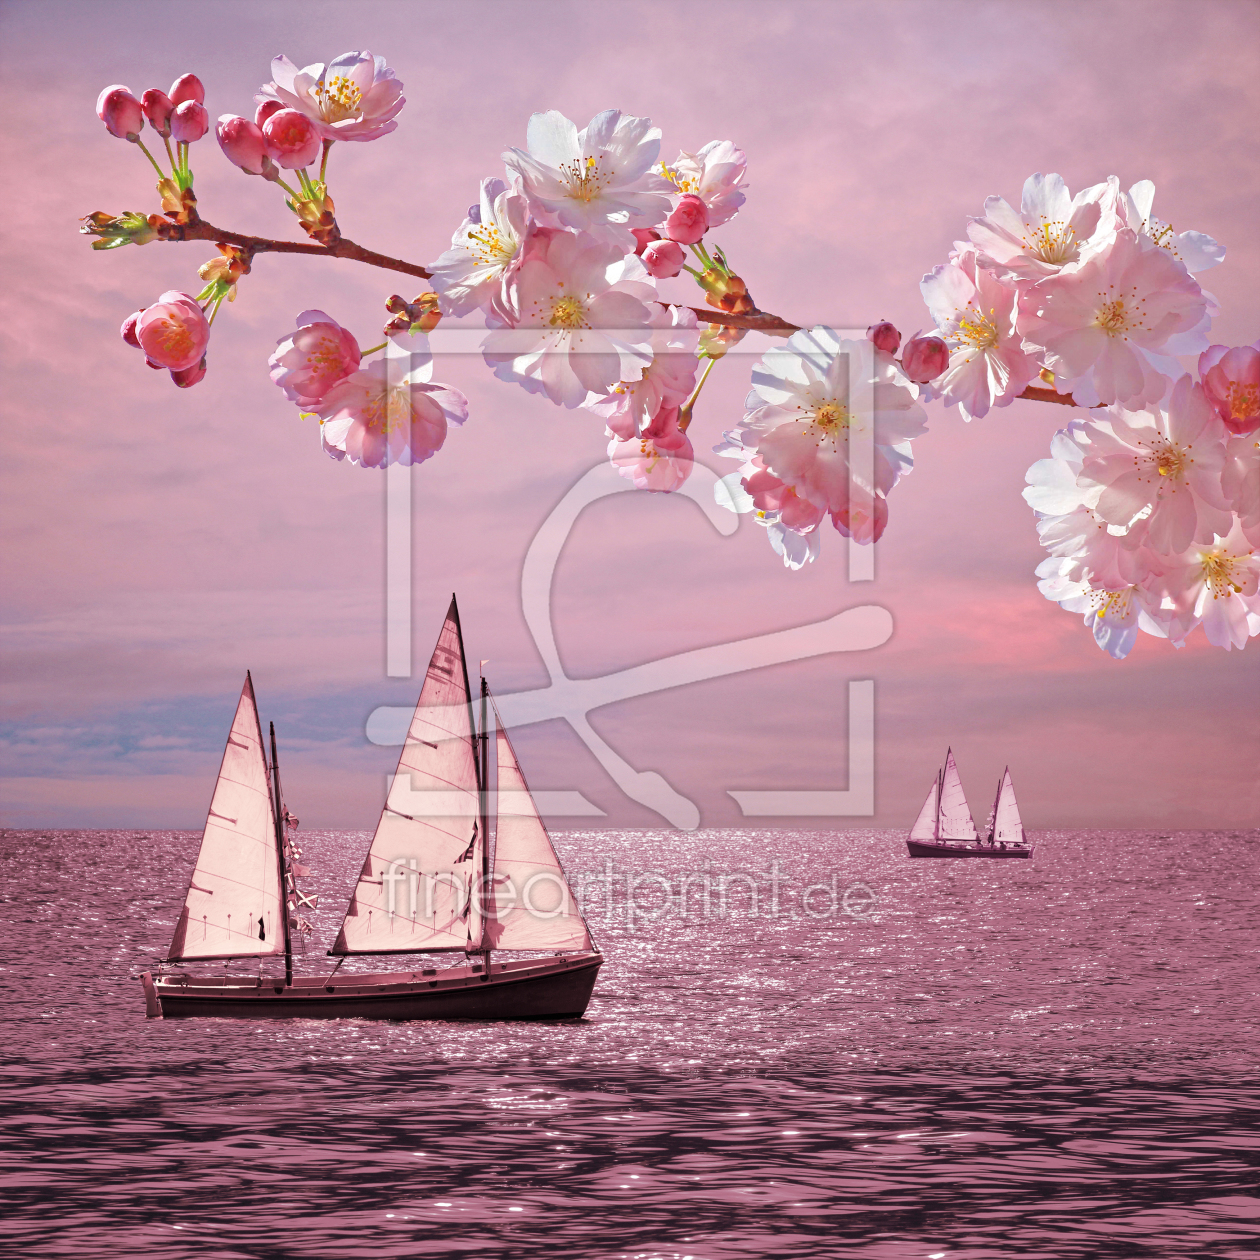 Bild-Nr.: 11577594 Pink Sunset Dream erstellt von SusaZoom